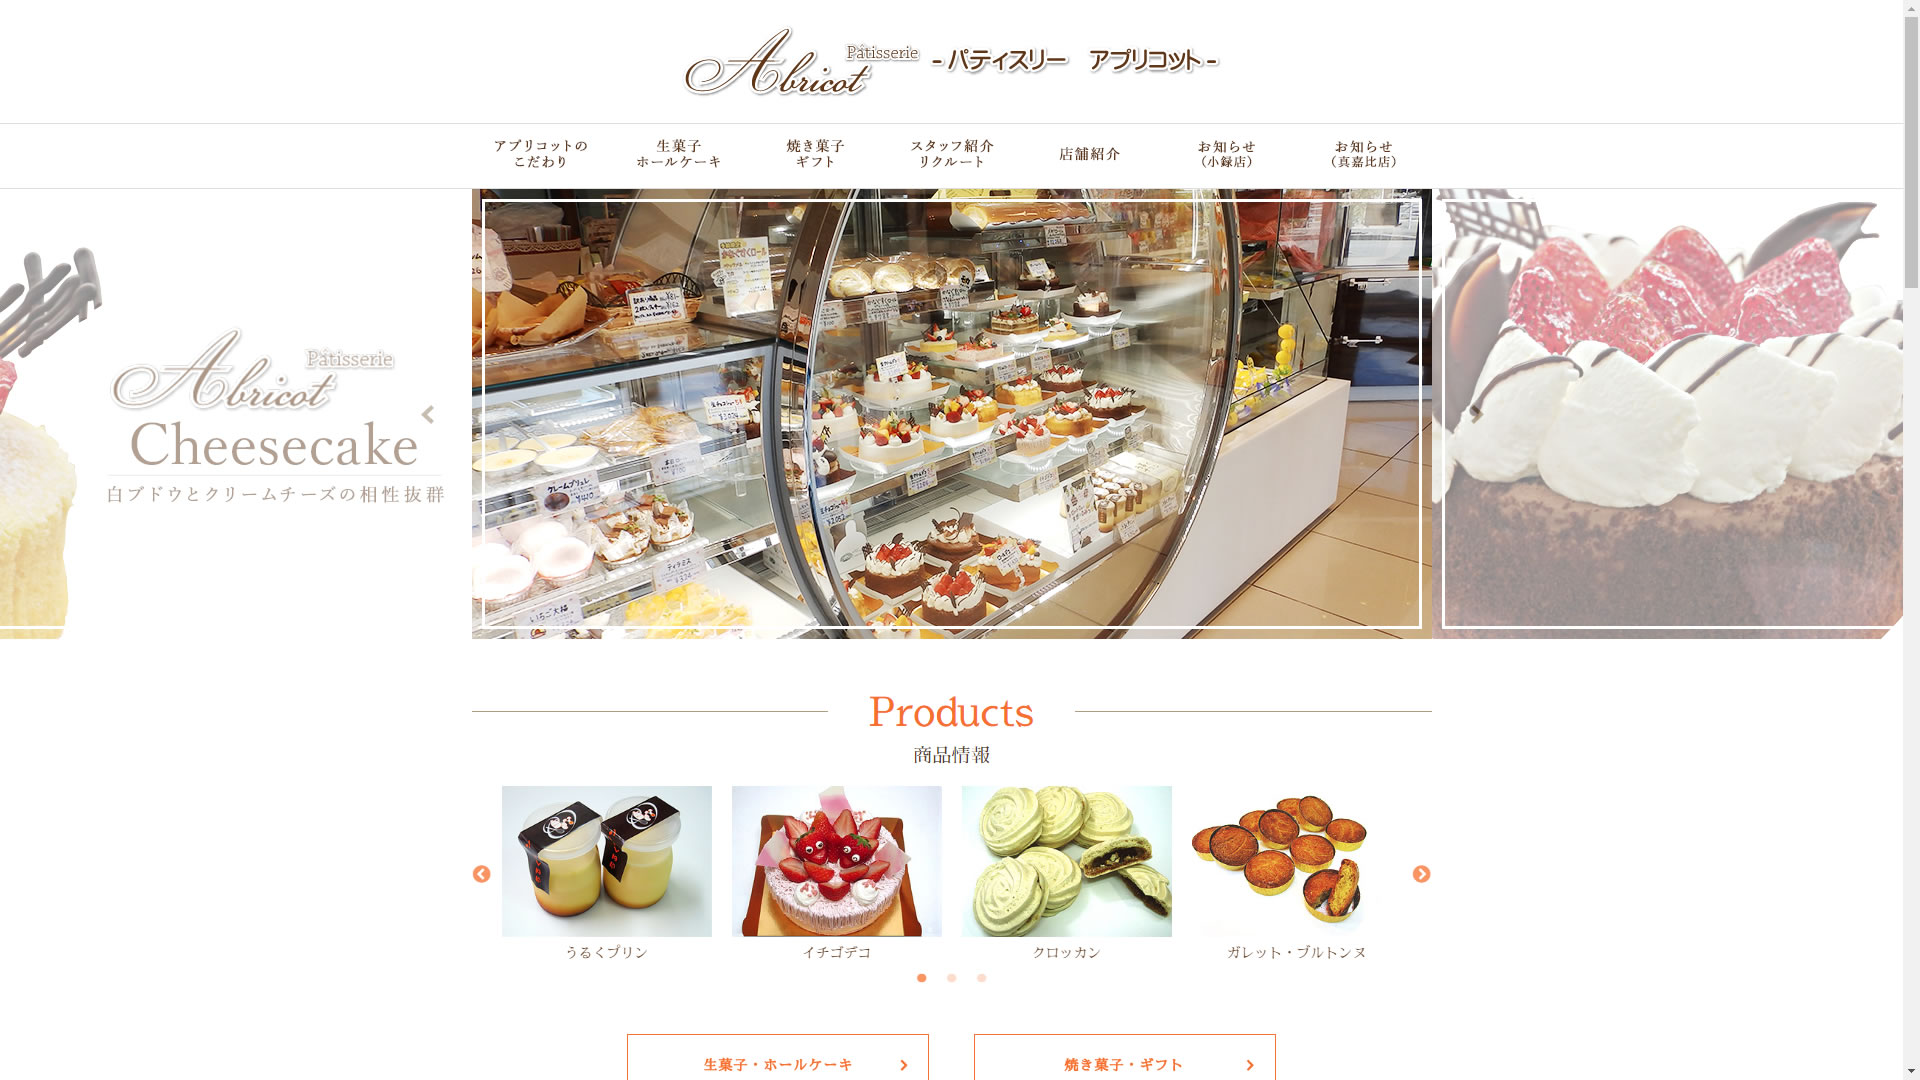 パティスリーアプリコット Patisserie Apricot 沖縄のケーキ屋さん 沖縄情報webサイト ちゅらなび Com